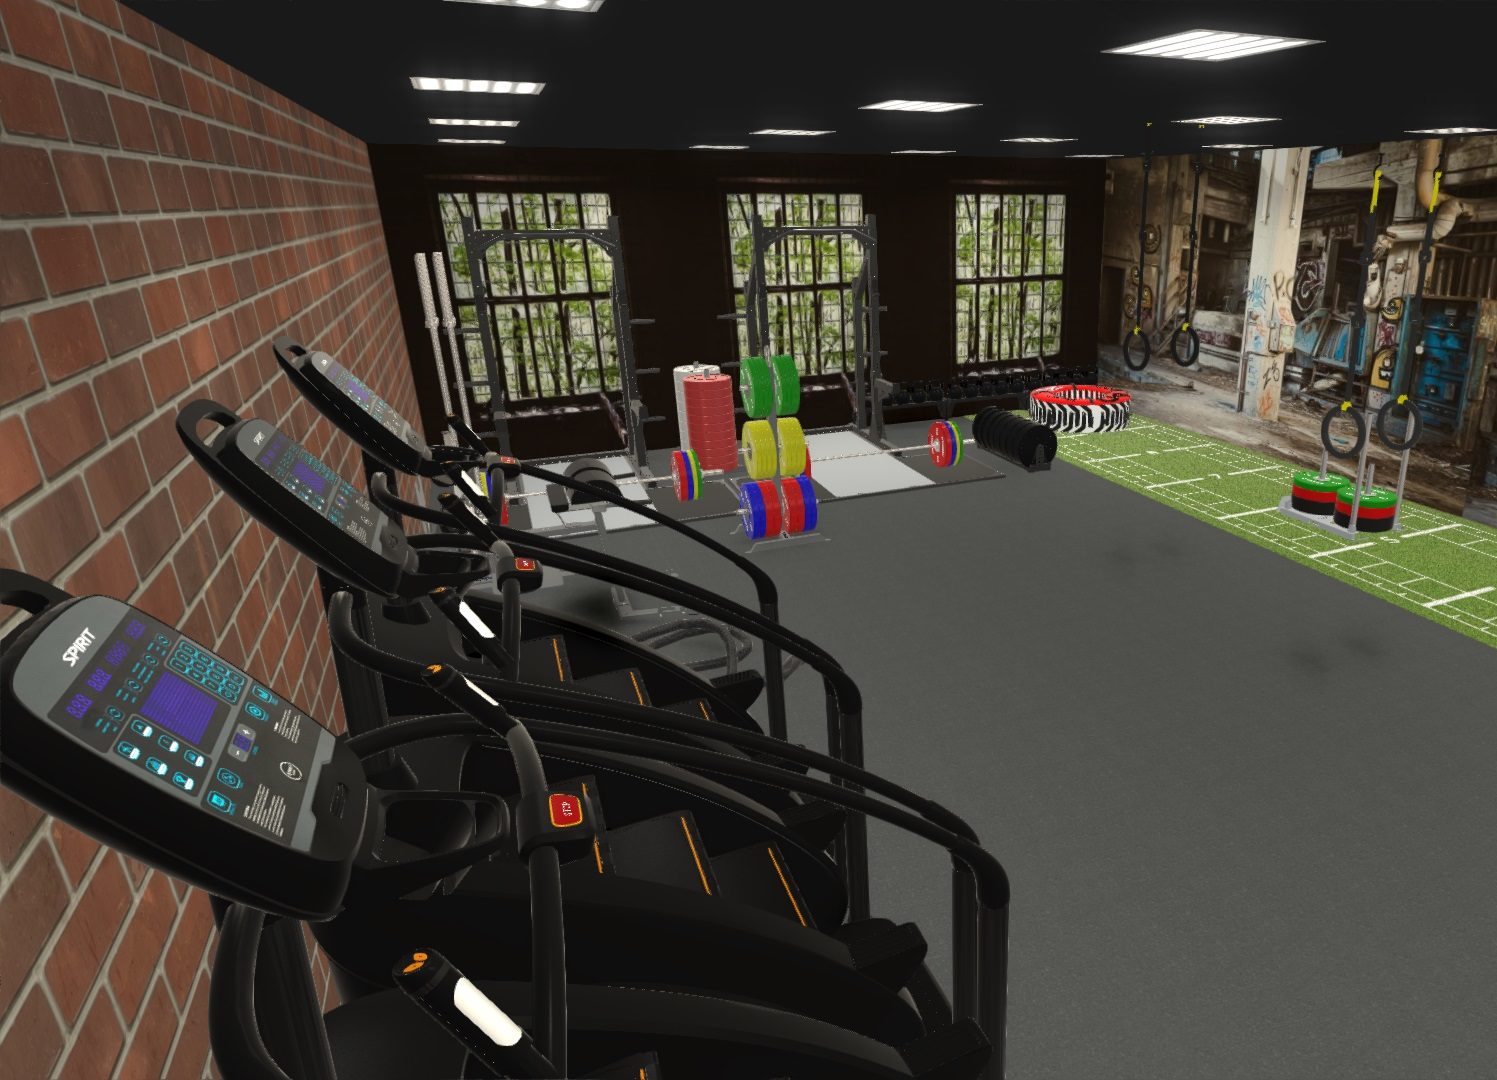 Training Series Club Fitness aménagement intérieur studio fonctional maquette modélisation 3D